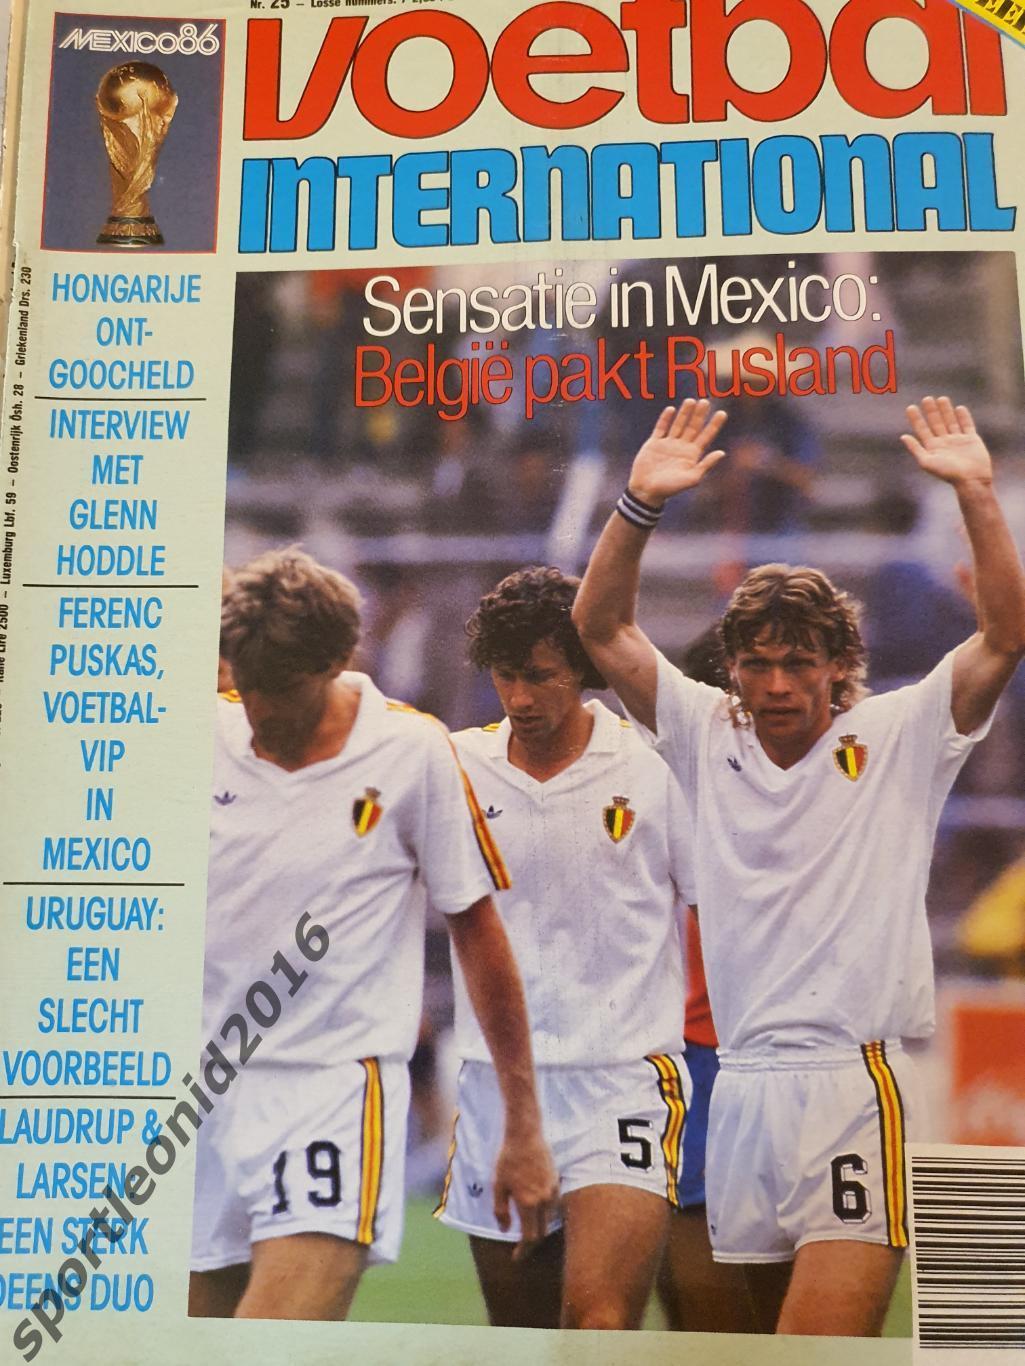 Voetbal International 1986.14 топ выпусков.В том числе итоговые к ЧМ-86.4 5